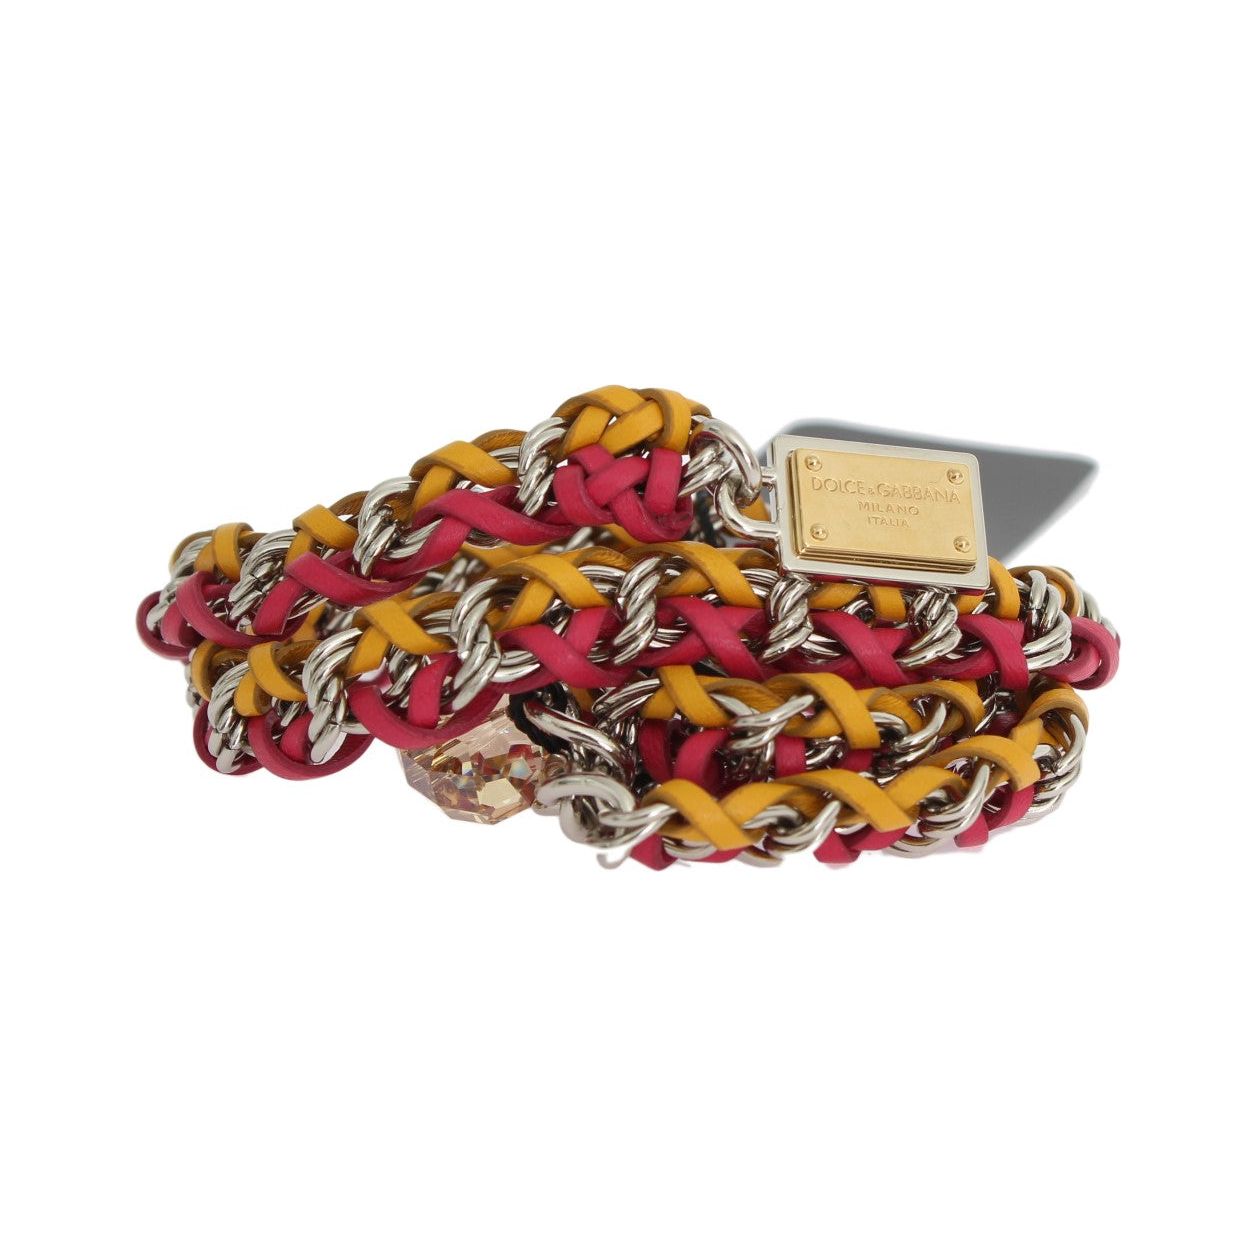 Dolce & Gabbana Elegant Multicolor Crystal-Embellished Belt Belt red-yellow-leather-crystal-belt